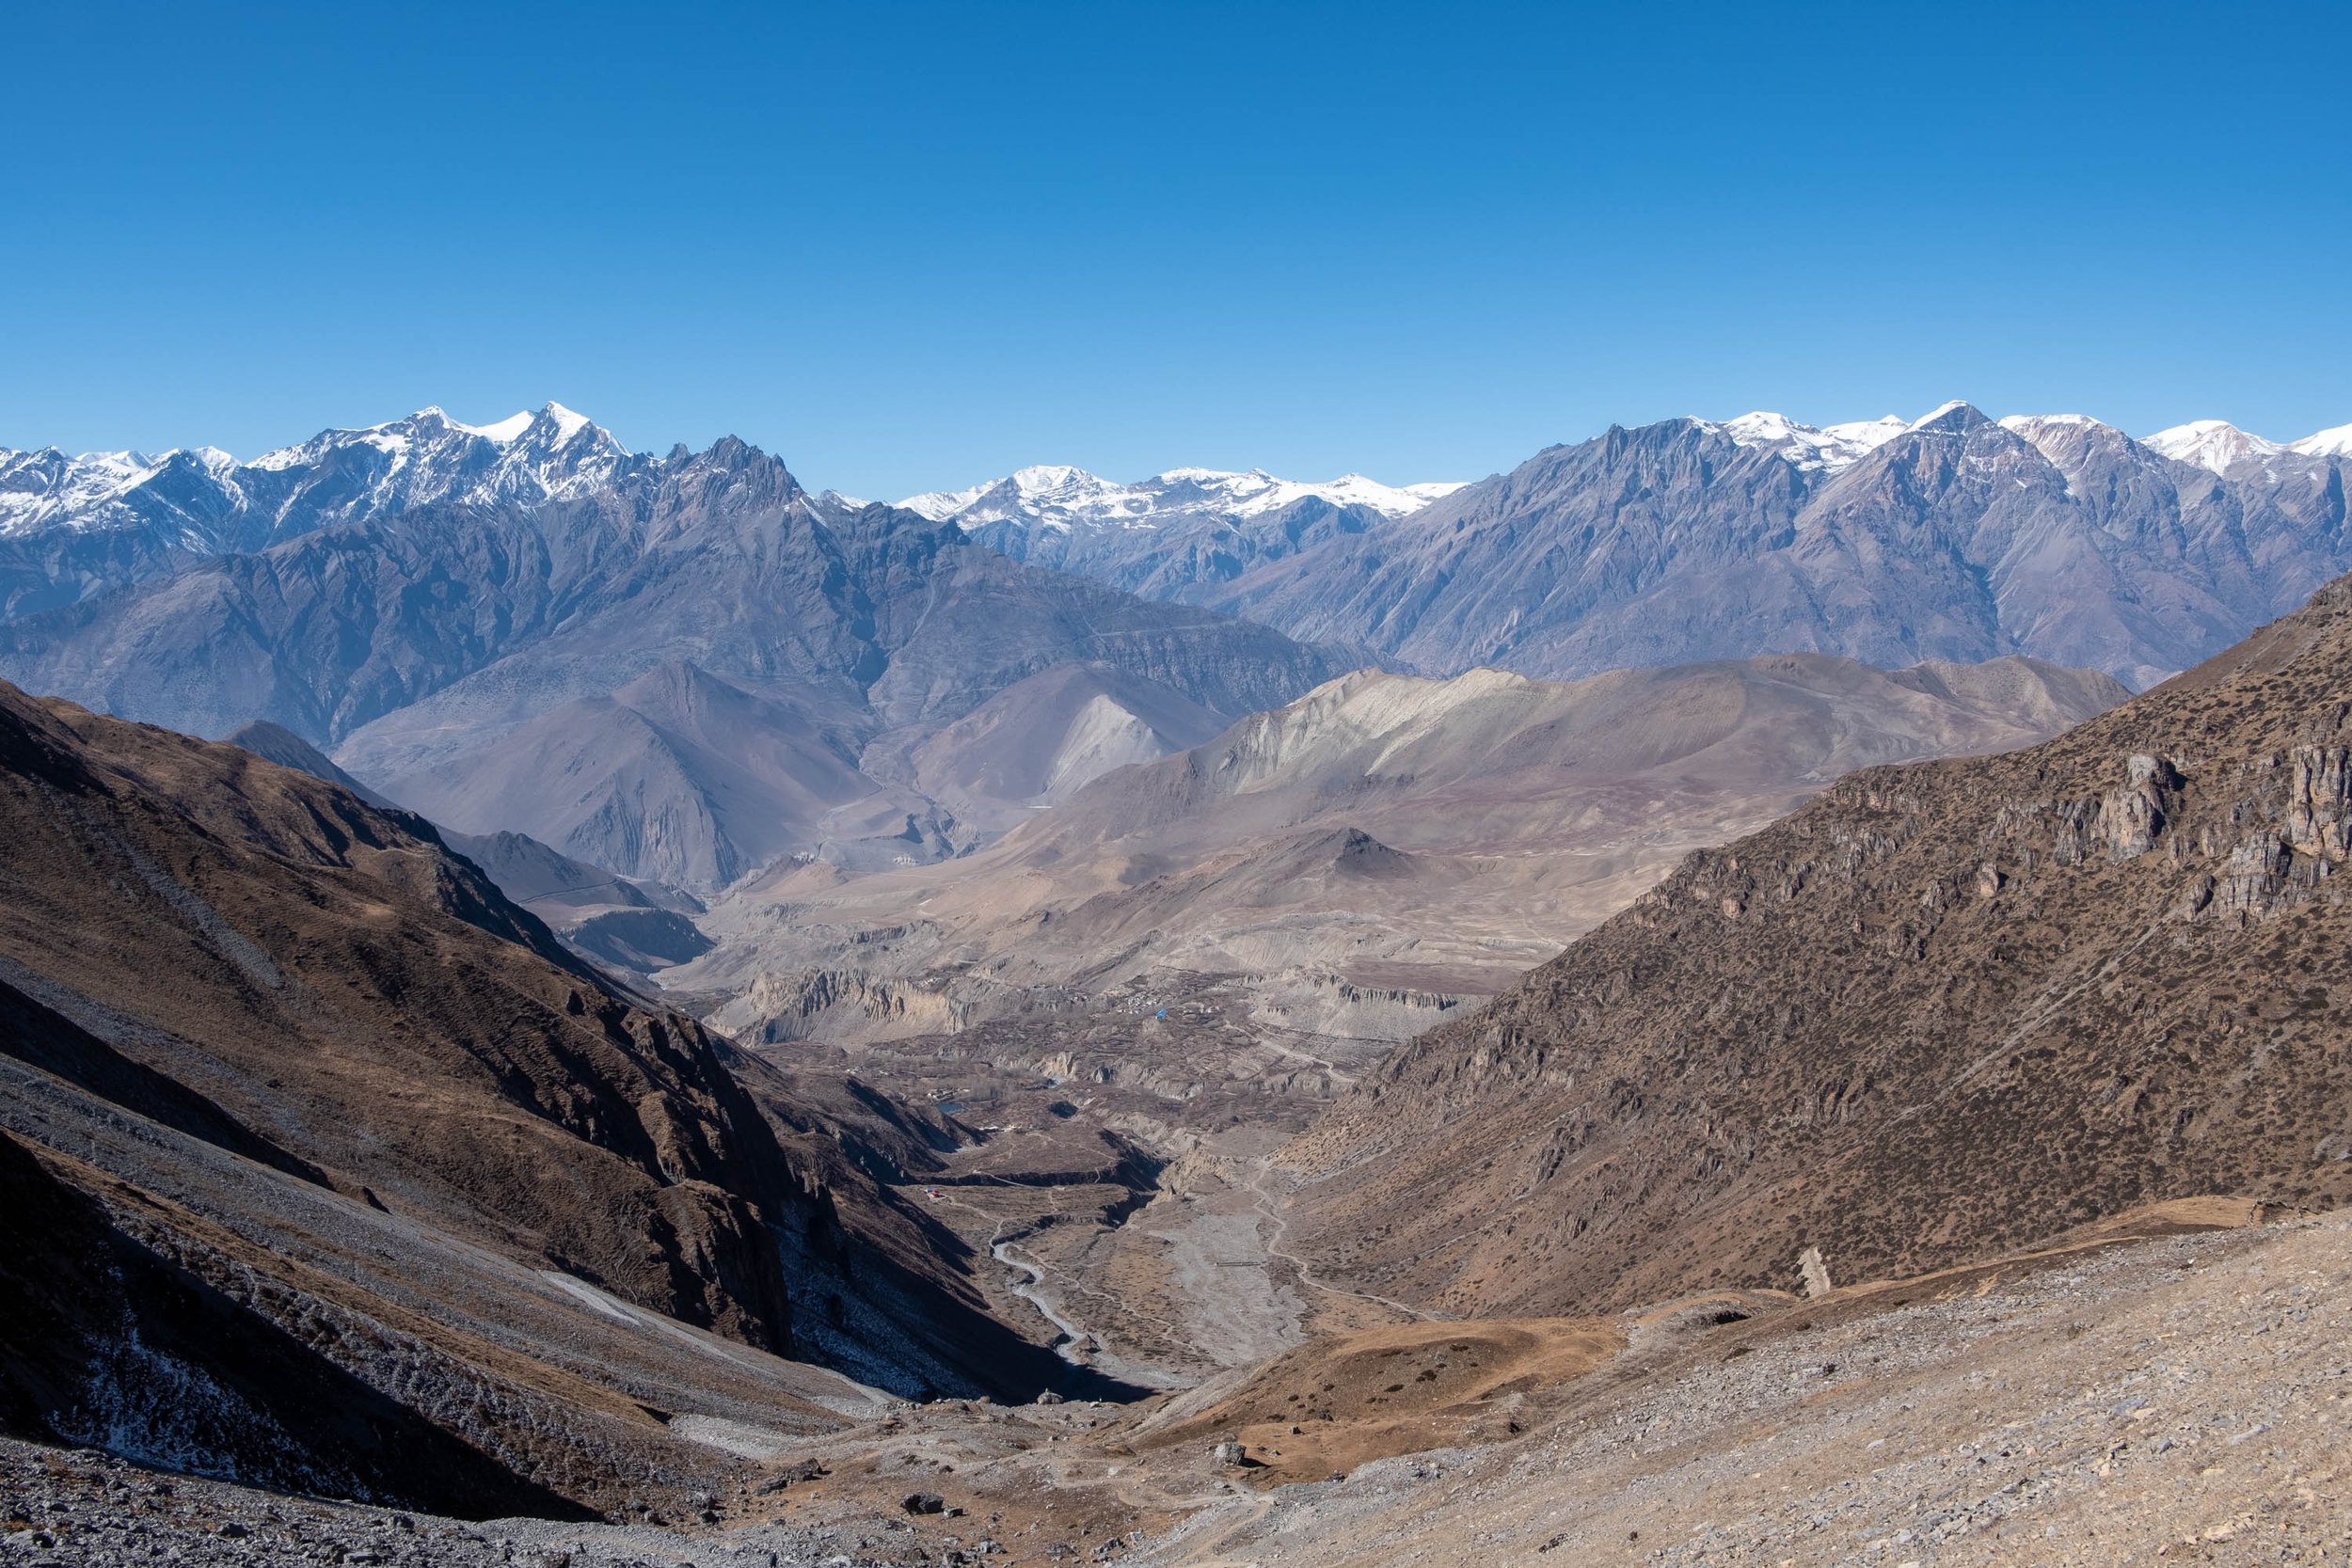  Kali Gandaki Valley, Mustang district 